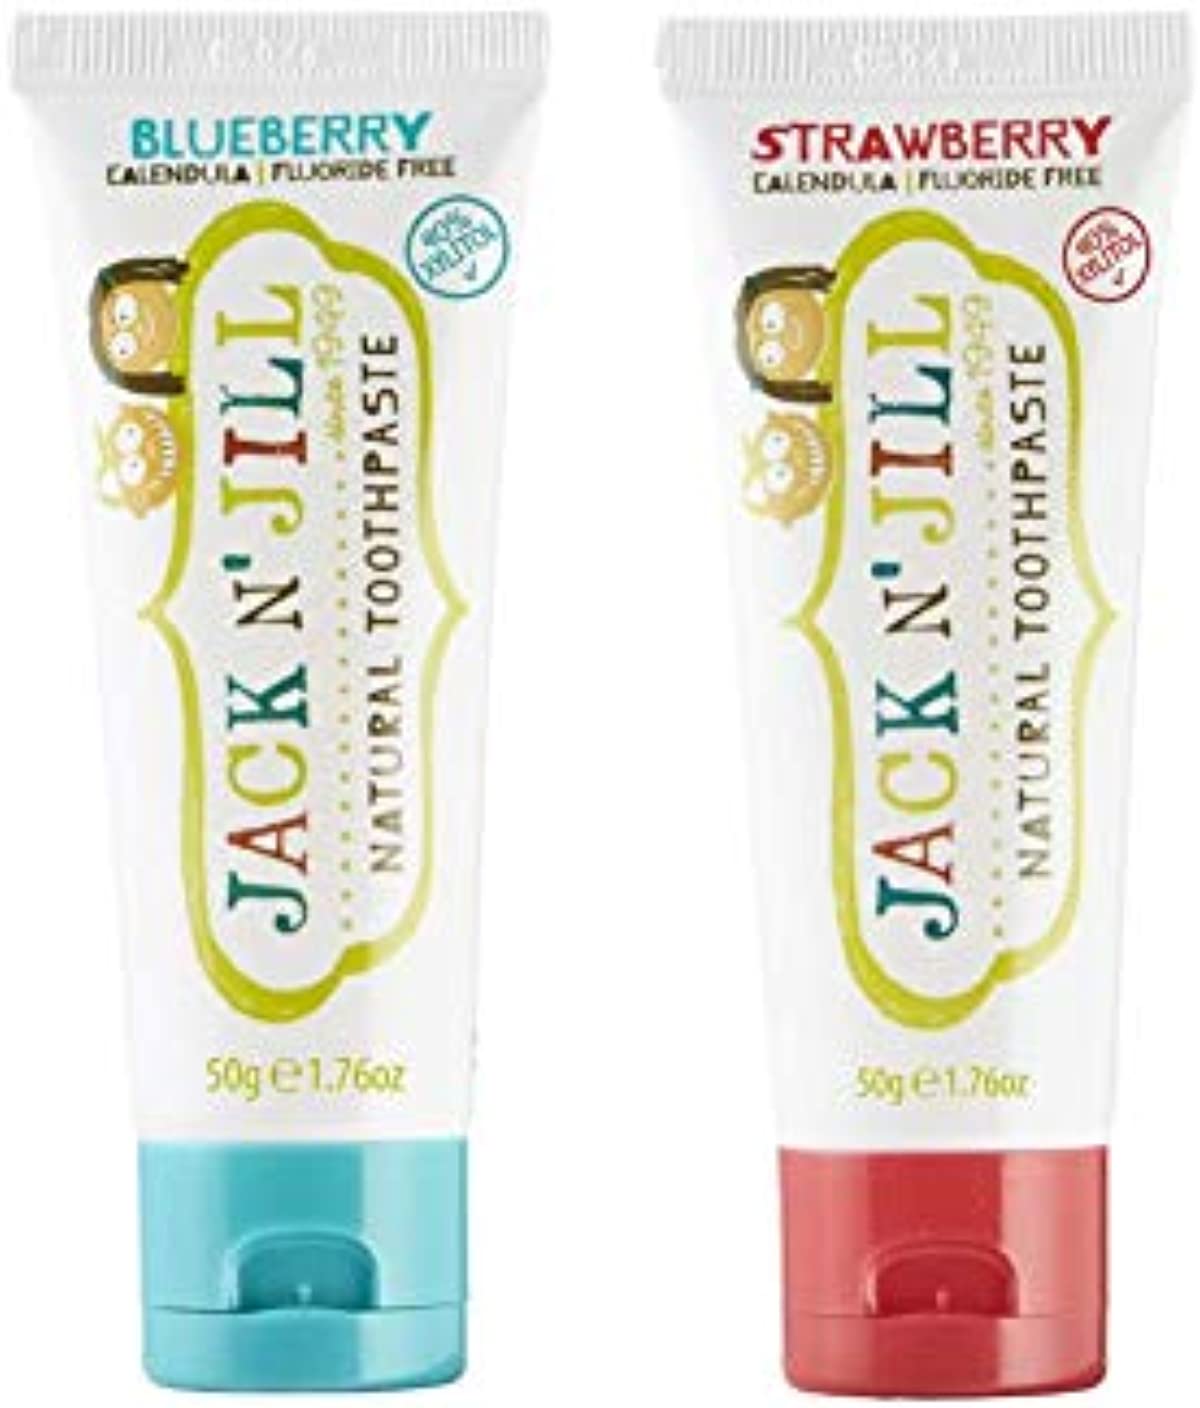 Jack N\' Jill Natural Kids Toothpaste - Blueberry & Strawberry - Organic, Gluten Free, Vegan, BPA Free, Fluoride Free, SLS Free, Dairy Free - Making Toothbrushing Fun for Kids - 1.76 oz (Pack of 2)